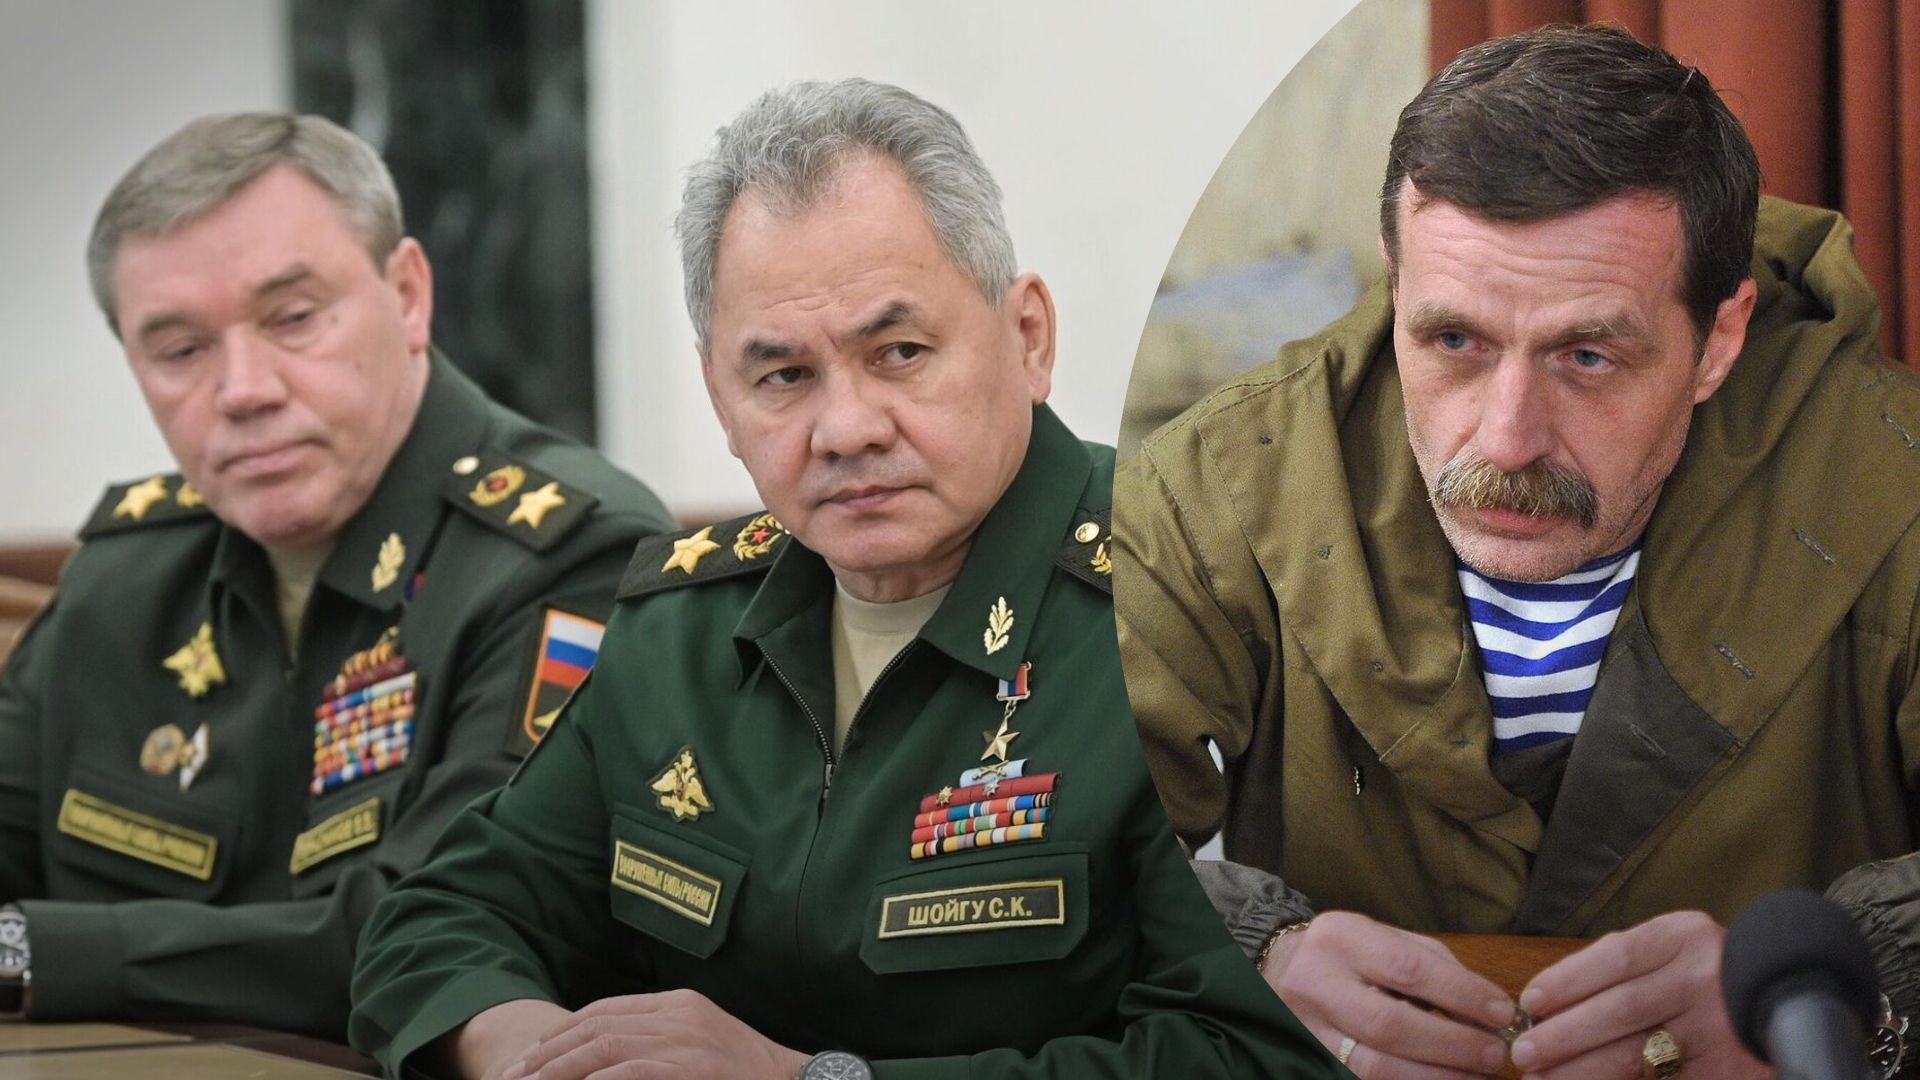 Безлер закликав убити Шойгу та Герасимова - за що їх критикує диверсант з "ДНР"